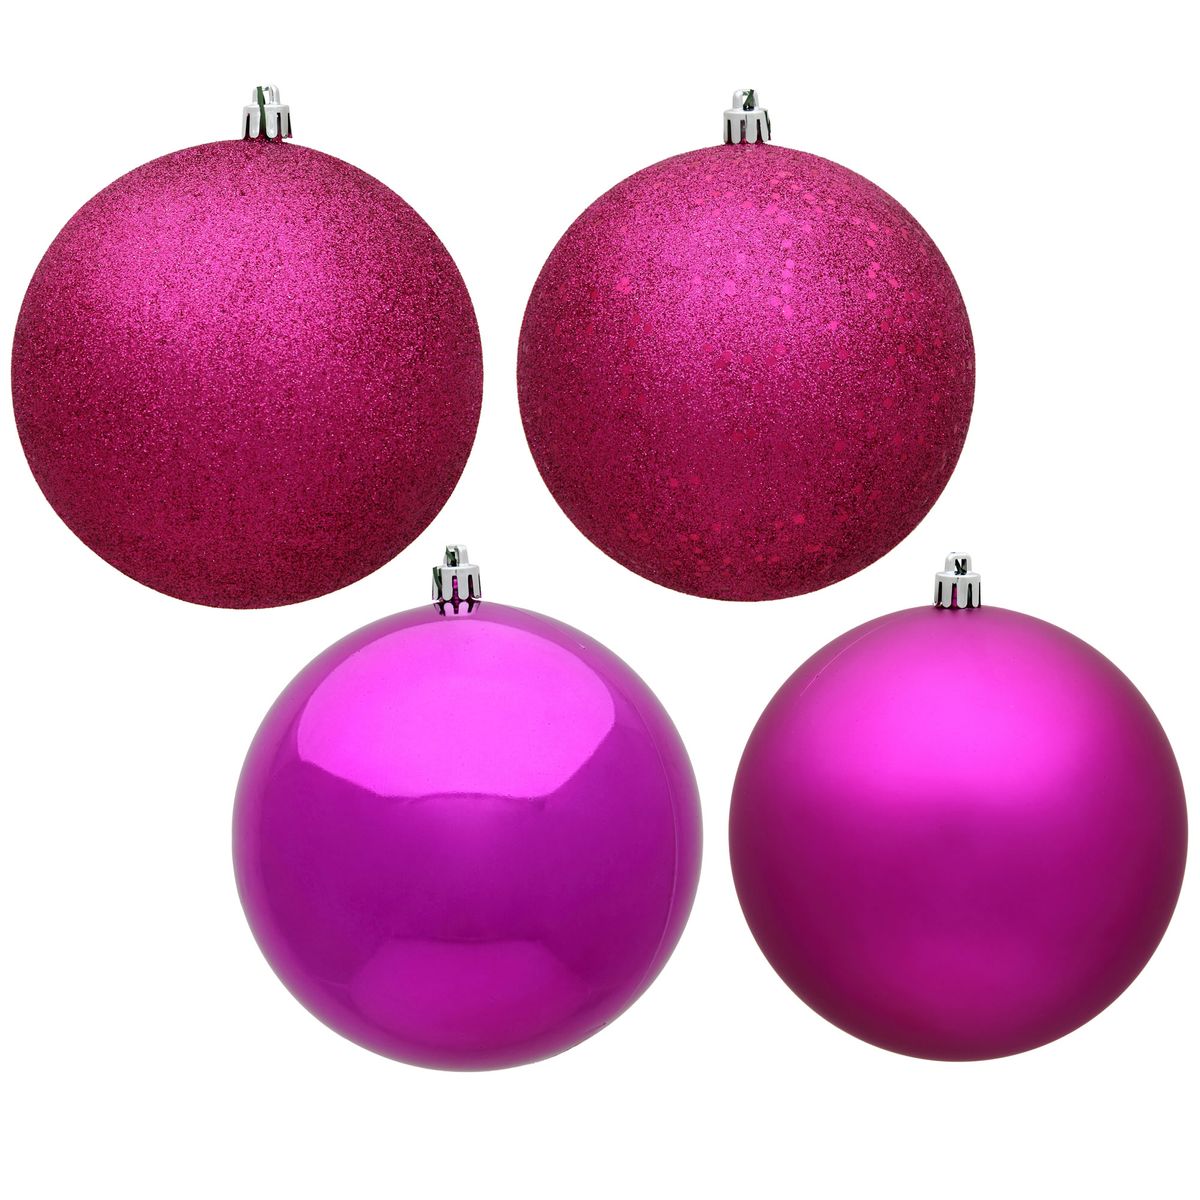 [送料無料] Vickerman 6" Fuchsia 4-Finish Ball Ornament アソートメント、1箱4個入り [楽天海外通販] | Vickerman 6" Fuchsia 4-Finish Ball Ornament Assortment, 4 per Box